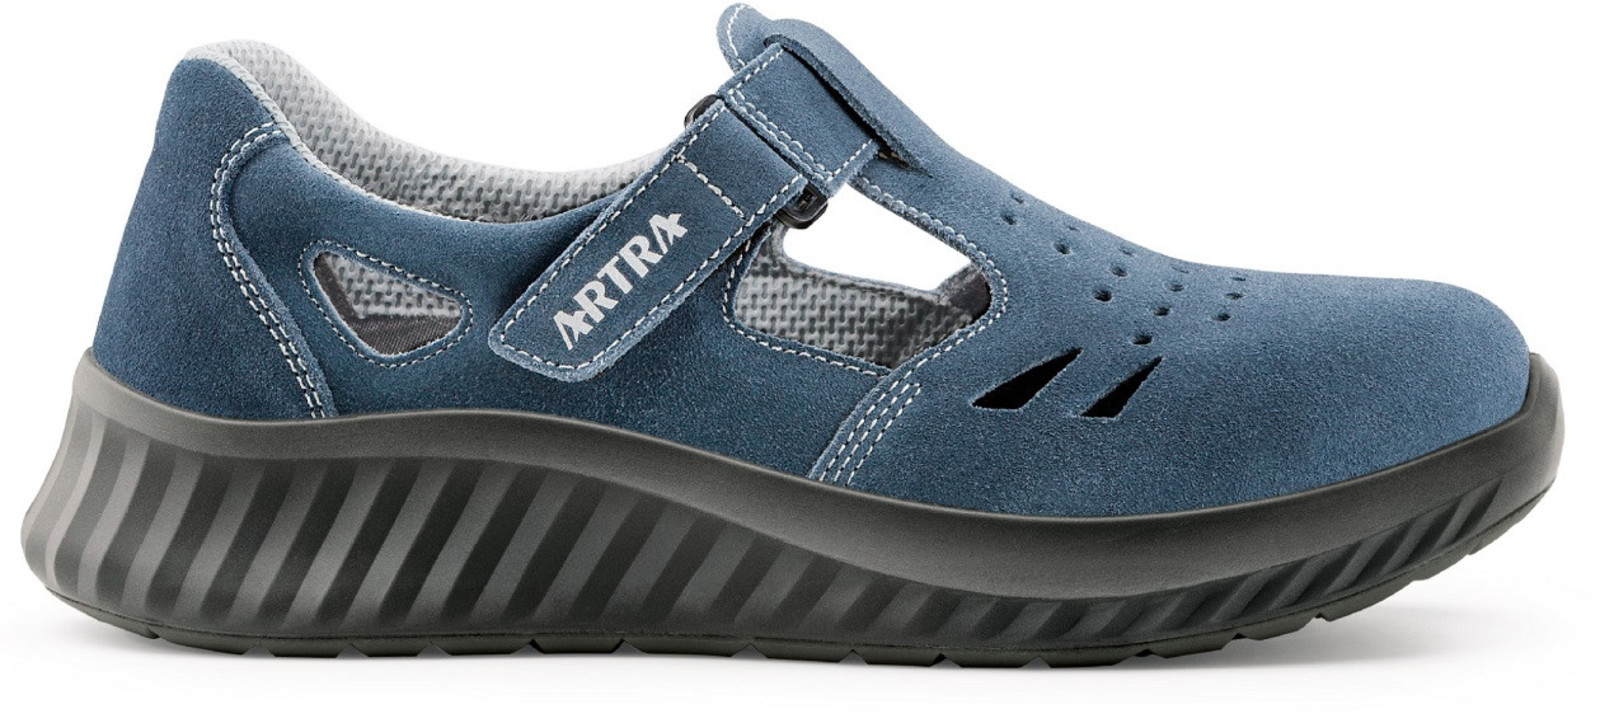 Bezpečnostné sandále Artra Armen 9007 9360 S1 - veľkosť: 40, farba: modrá